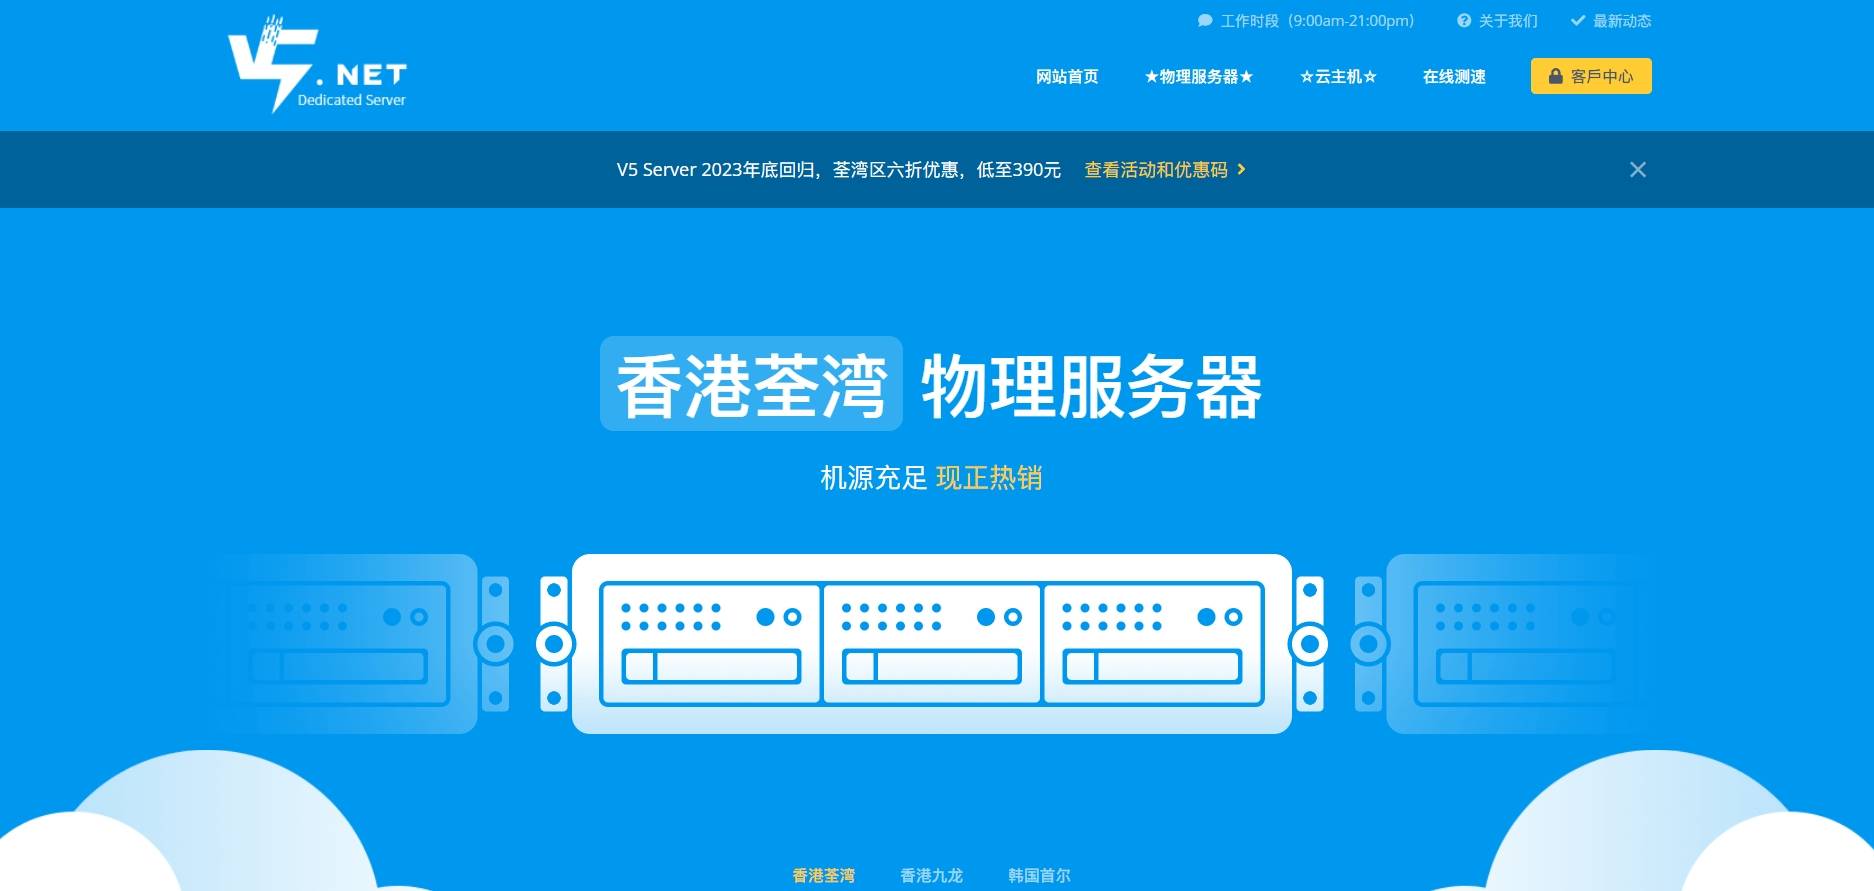 2023年11月 V5.NET回归 ，香港物理机/云端服务器六折